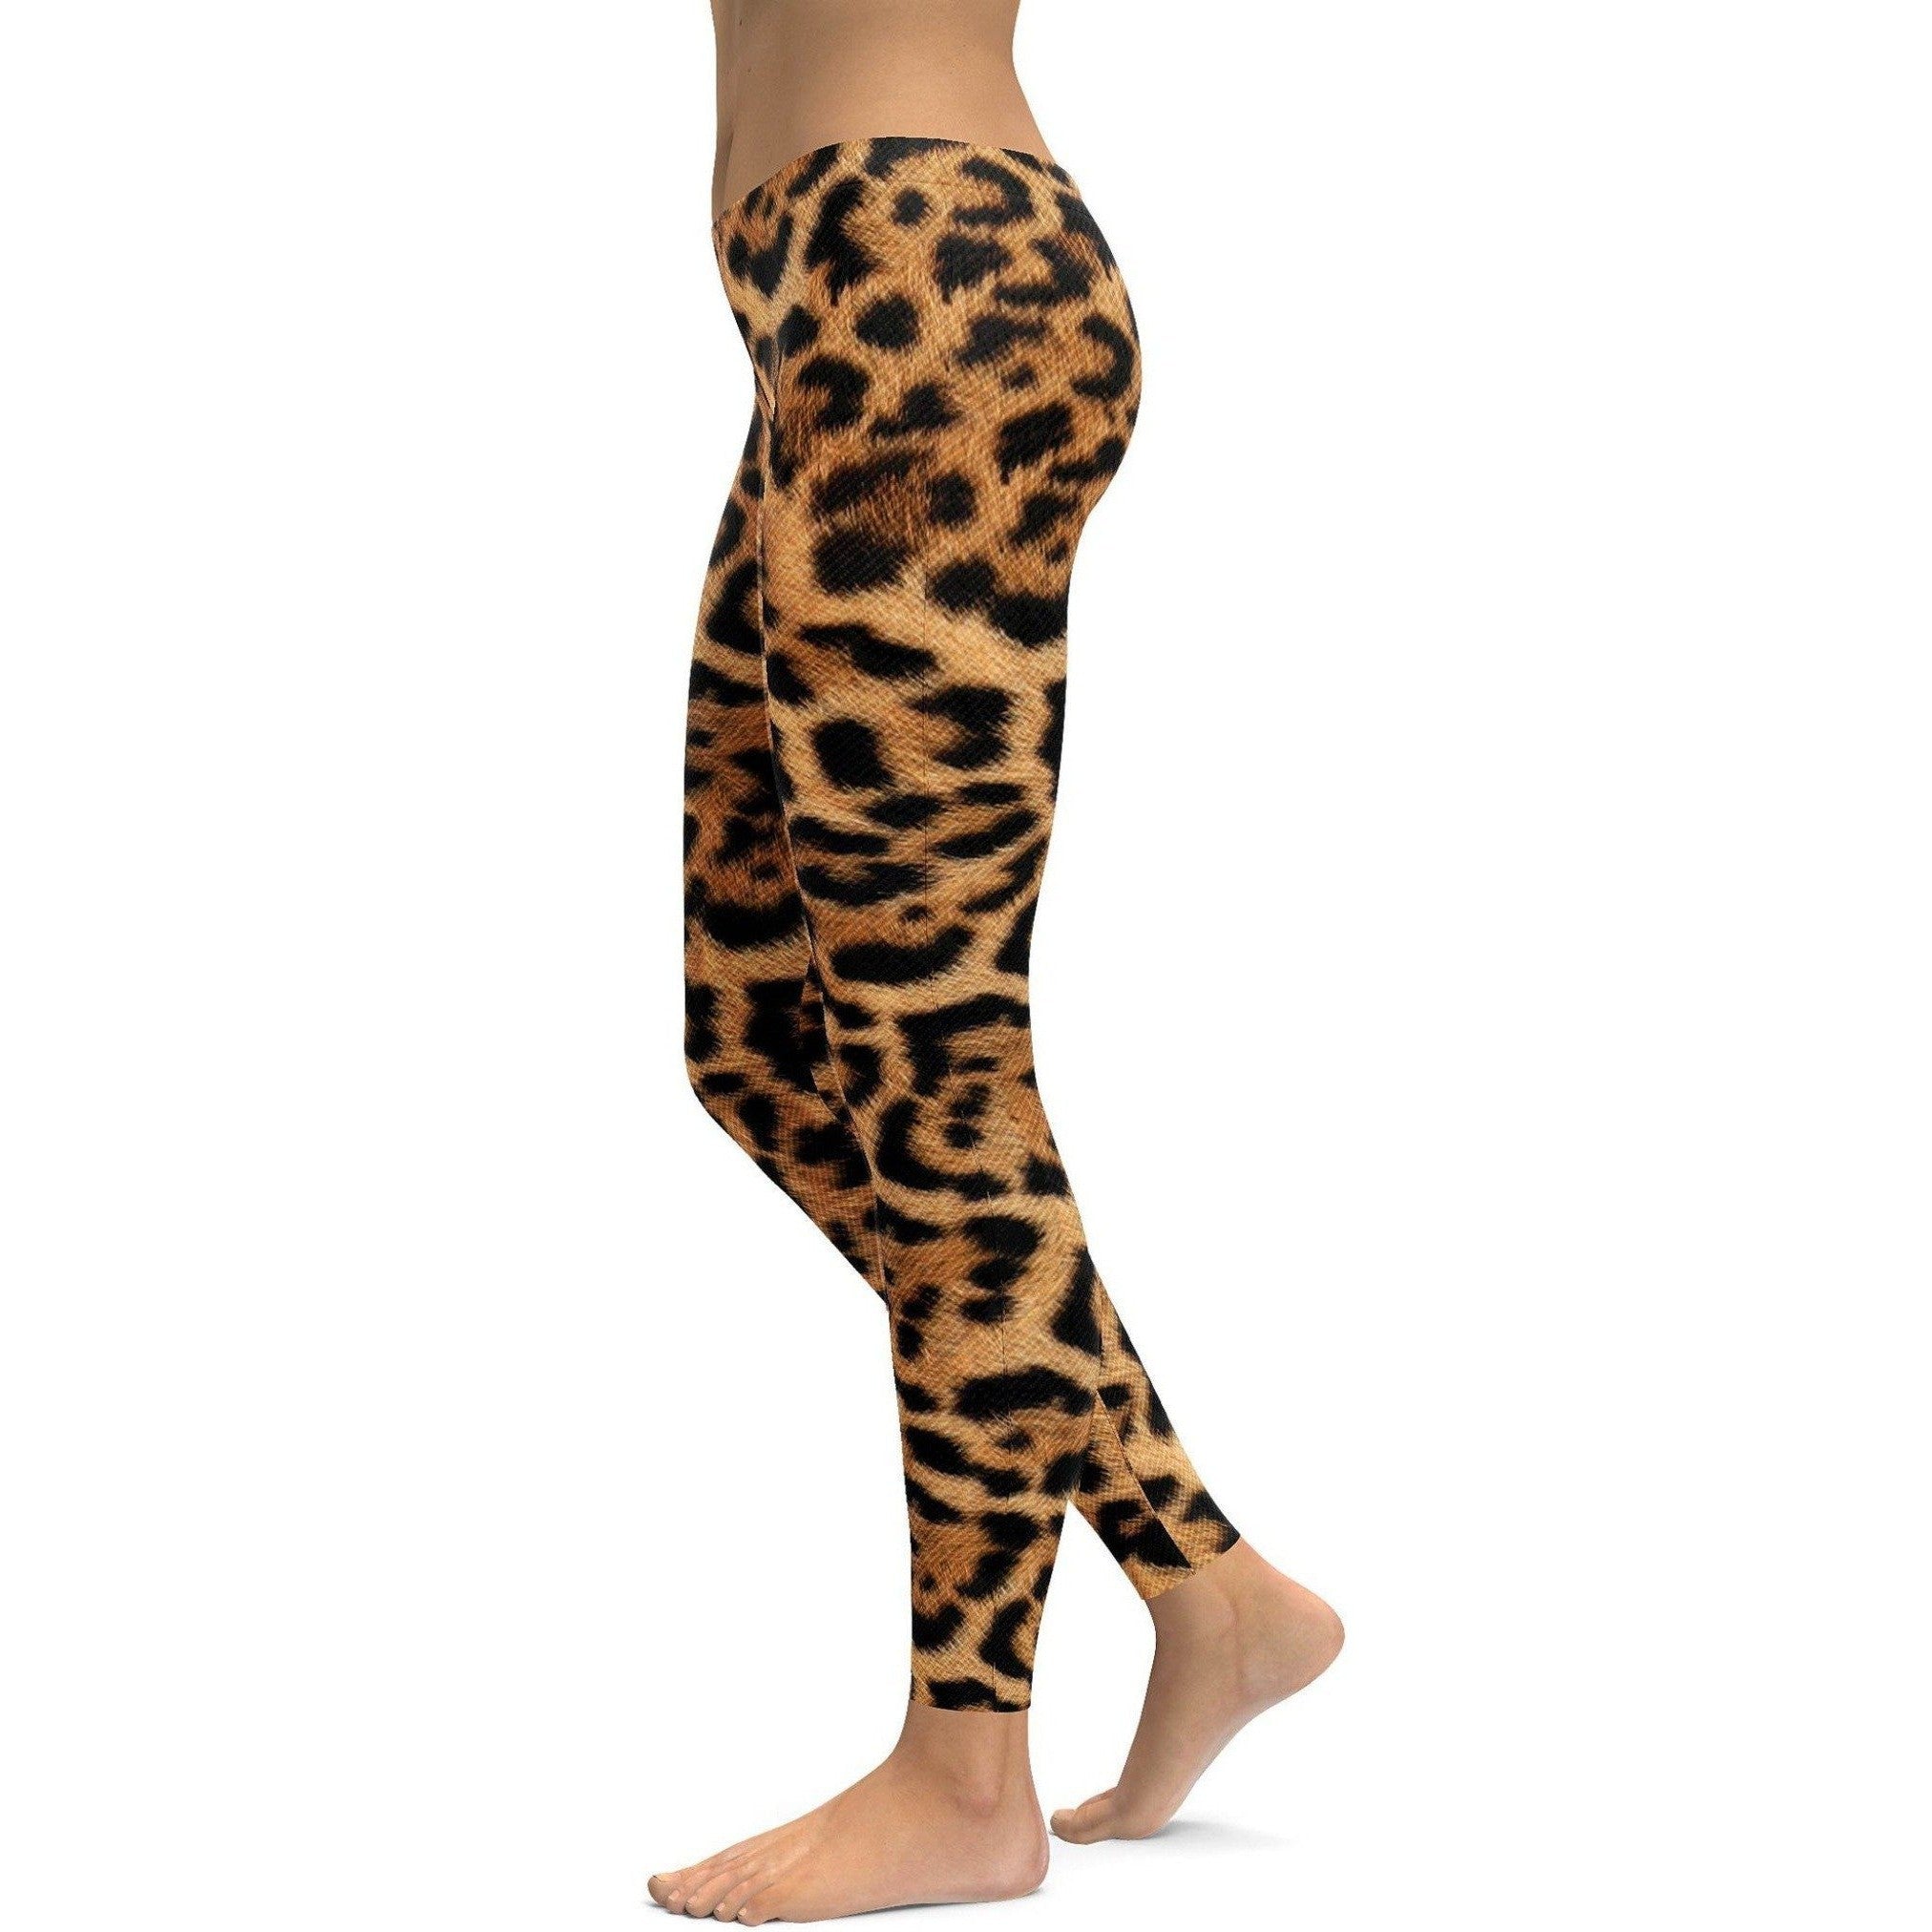 HIGORUN Leopard Seamless Leggings for Women High Waisted Workout